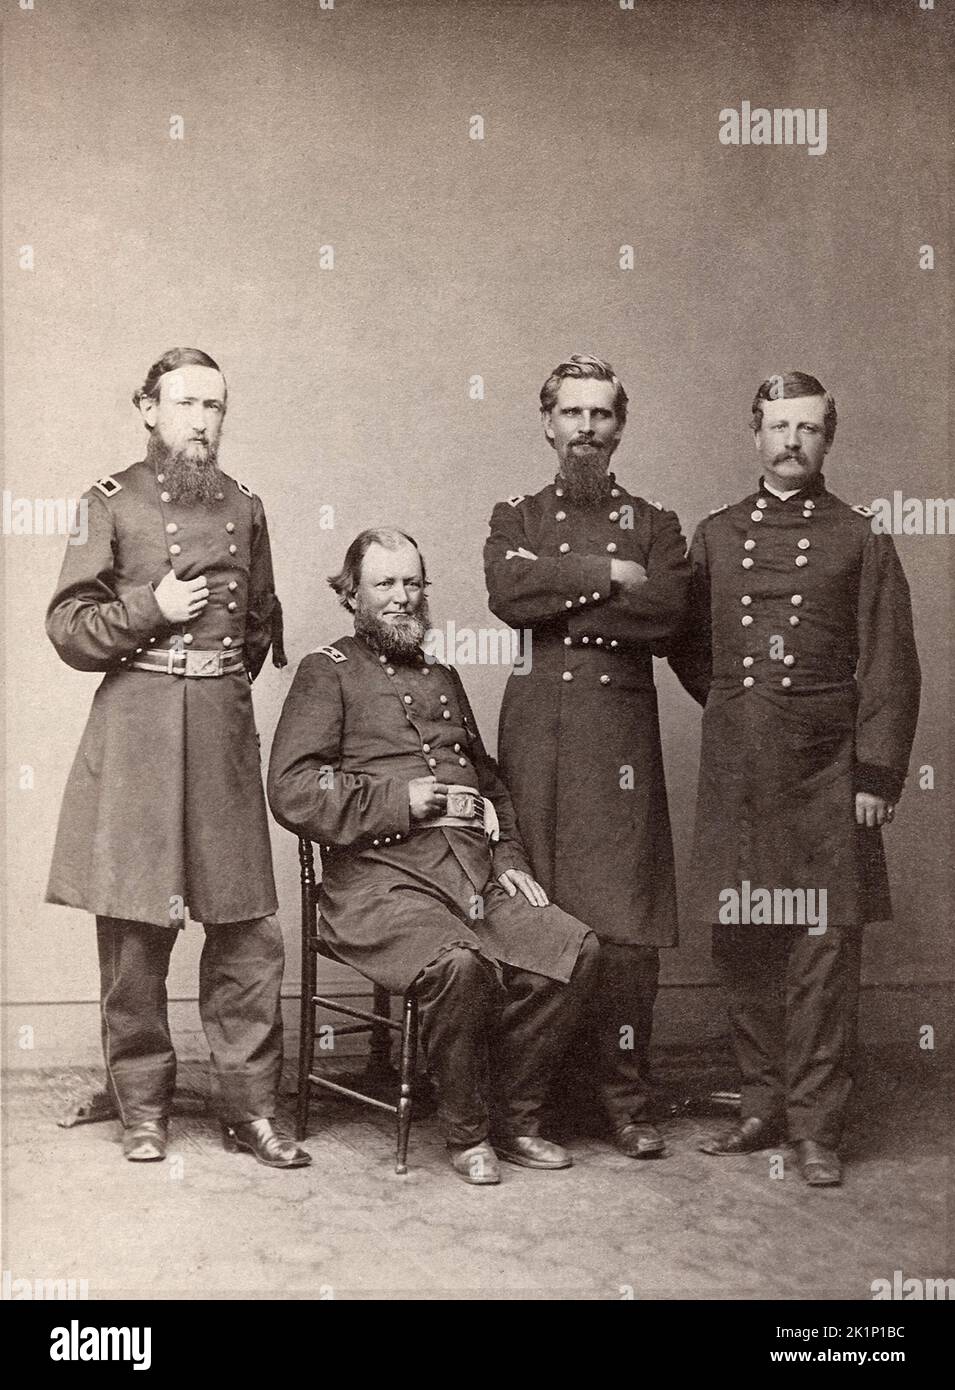 Präsident Benjamin Harrison als Brigadier General (links) mit anderen Kommandeuren des XX Corps während des amerikanischen Bürgerkrieges 1865. Stockfoto